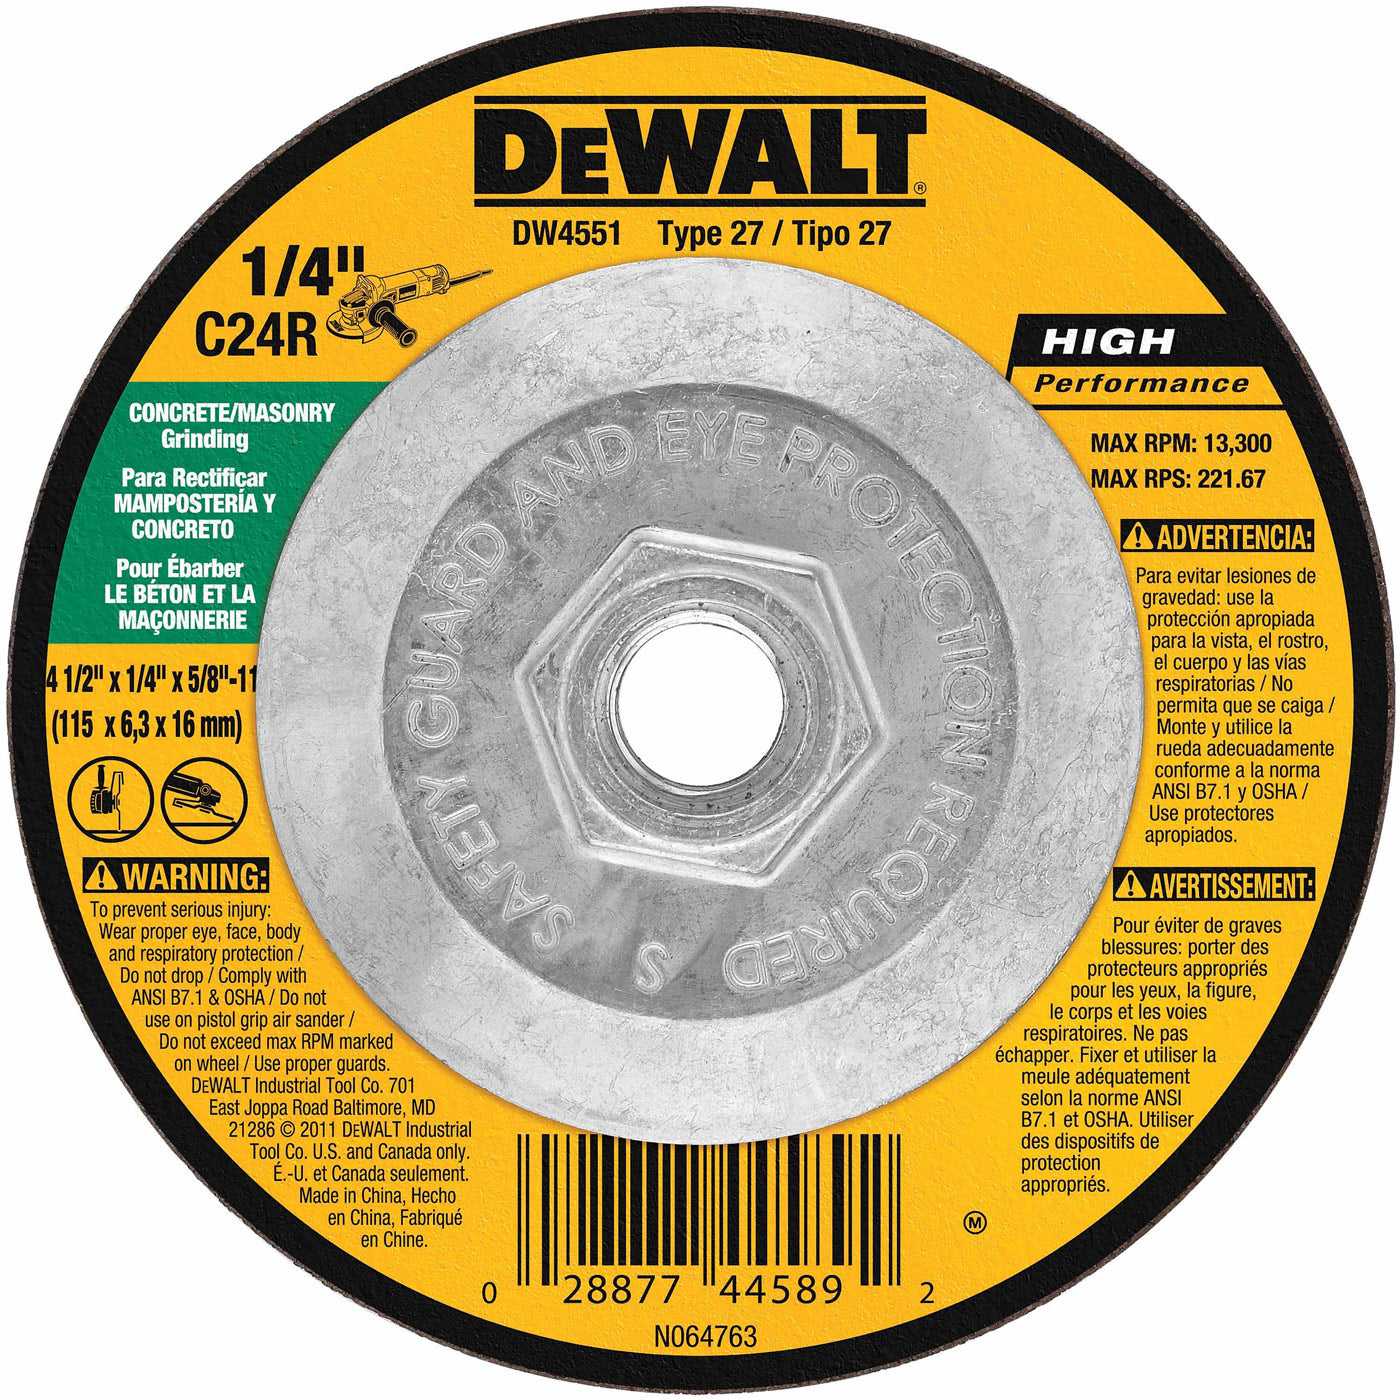 Dewalt, DeWalt DW4551 4-1/2" X 1/4" X 5/8-11" Masonry Grinding Wheel